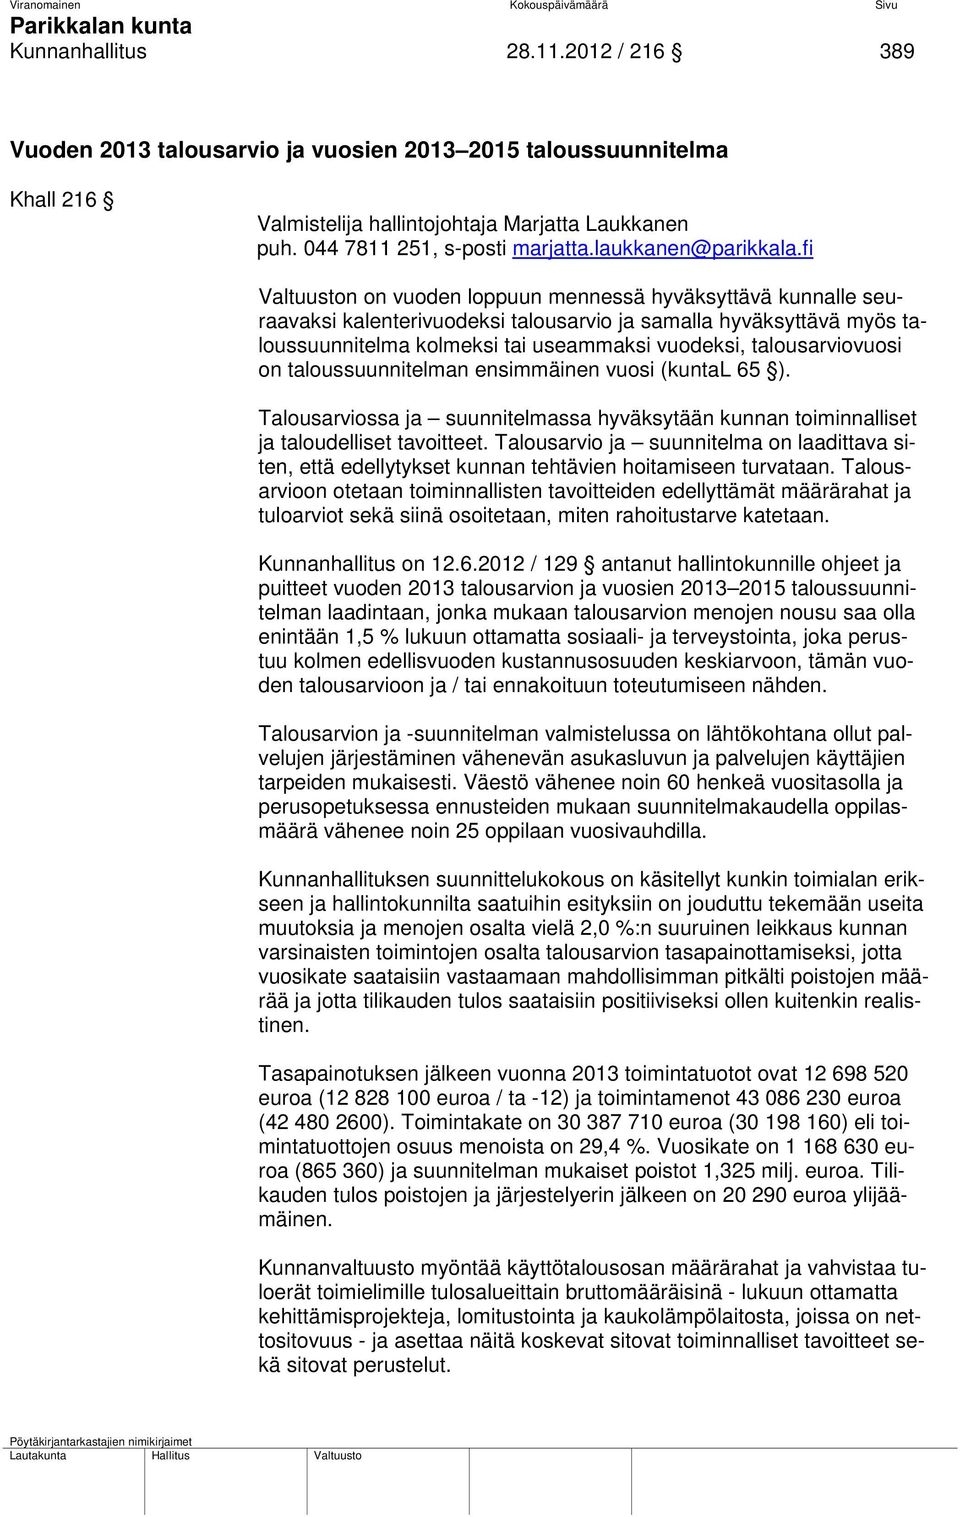 fi Valtuuston on vuoden loppuun mennessä hyväksyttävä kunnalle seuraavaksi kalenterivuodeksi talousarvio ja samalla hyväksyttävä myös taloussuunnitelma kolmeksi tai useammaksi vuodeksi,